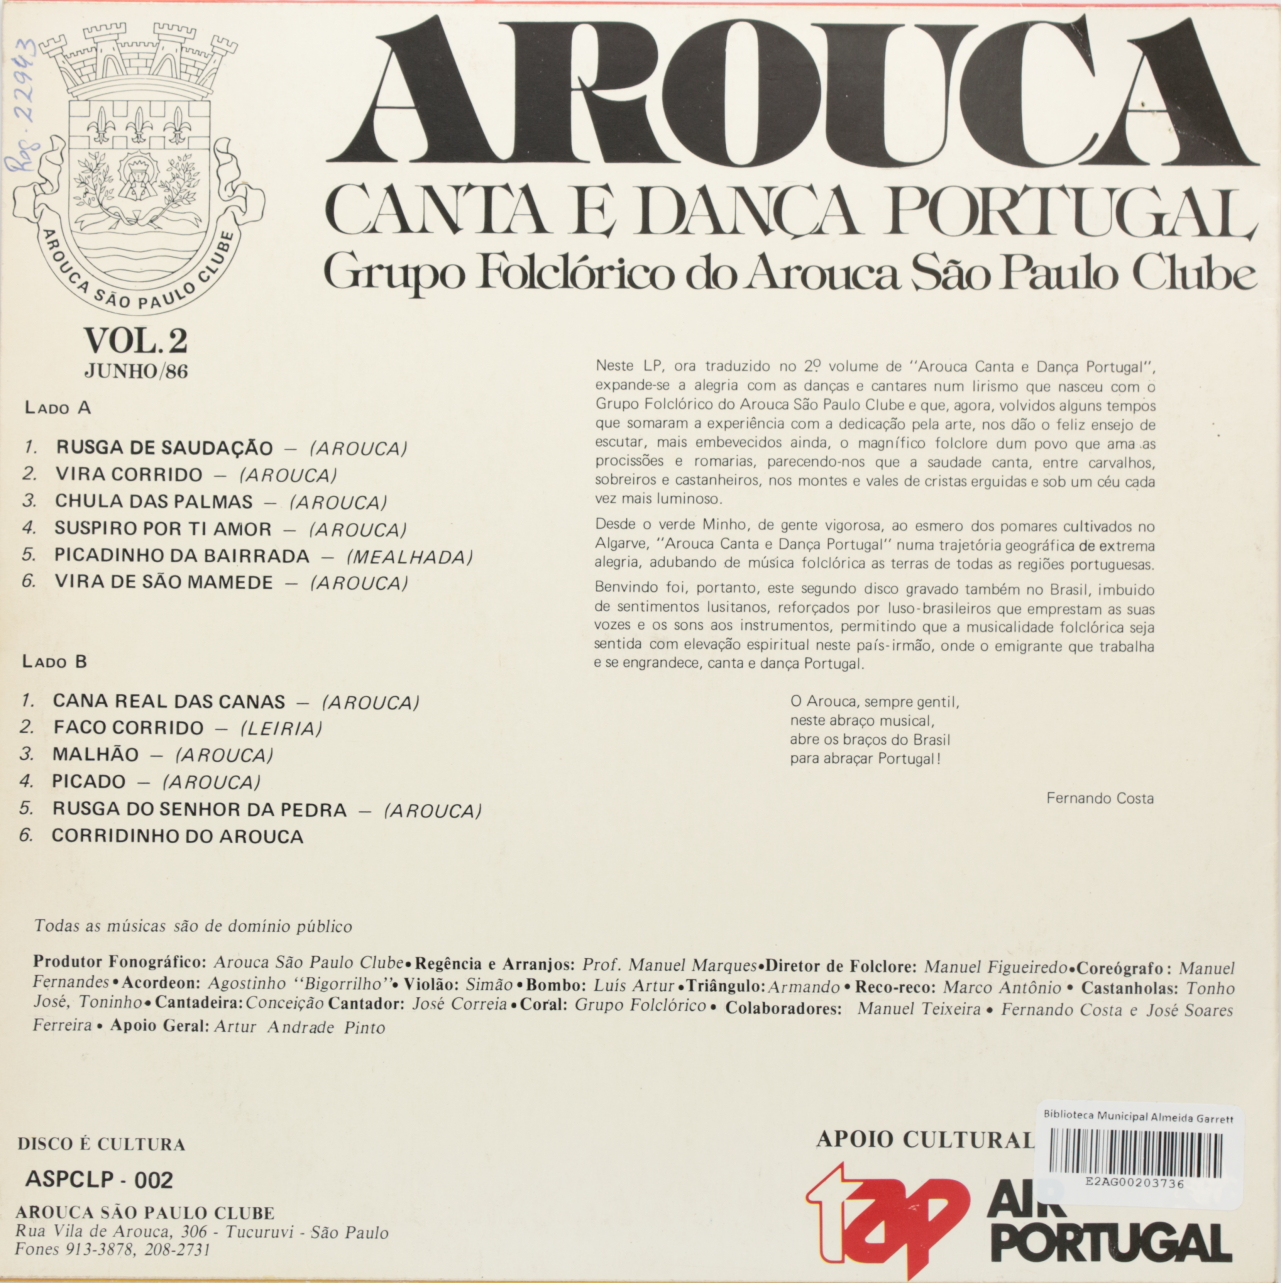 Arouca, Canta e dança Portugal Volume 2